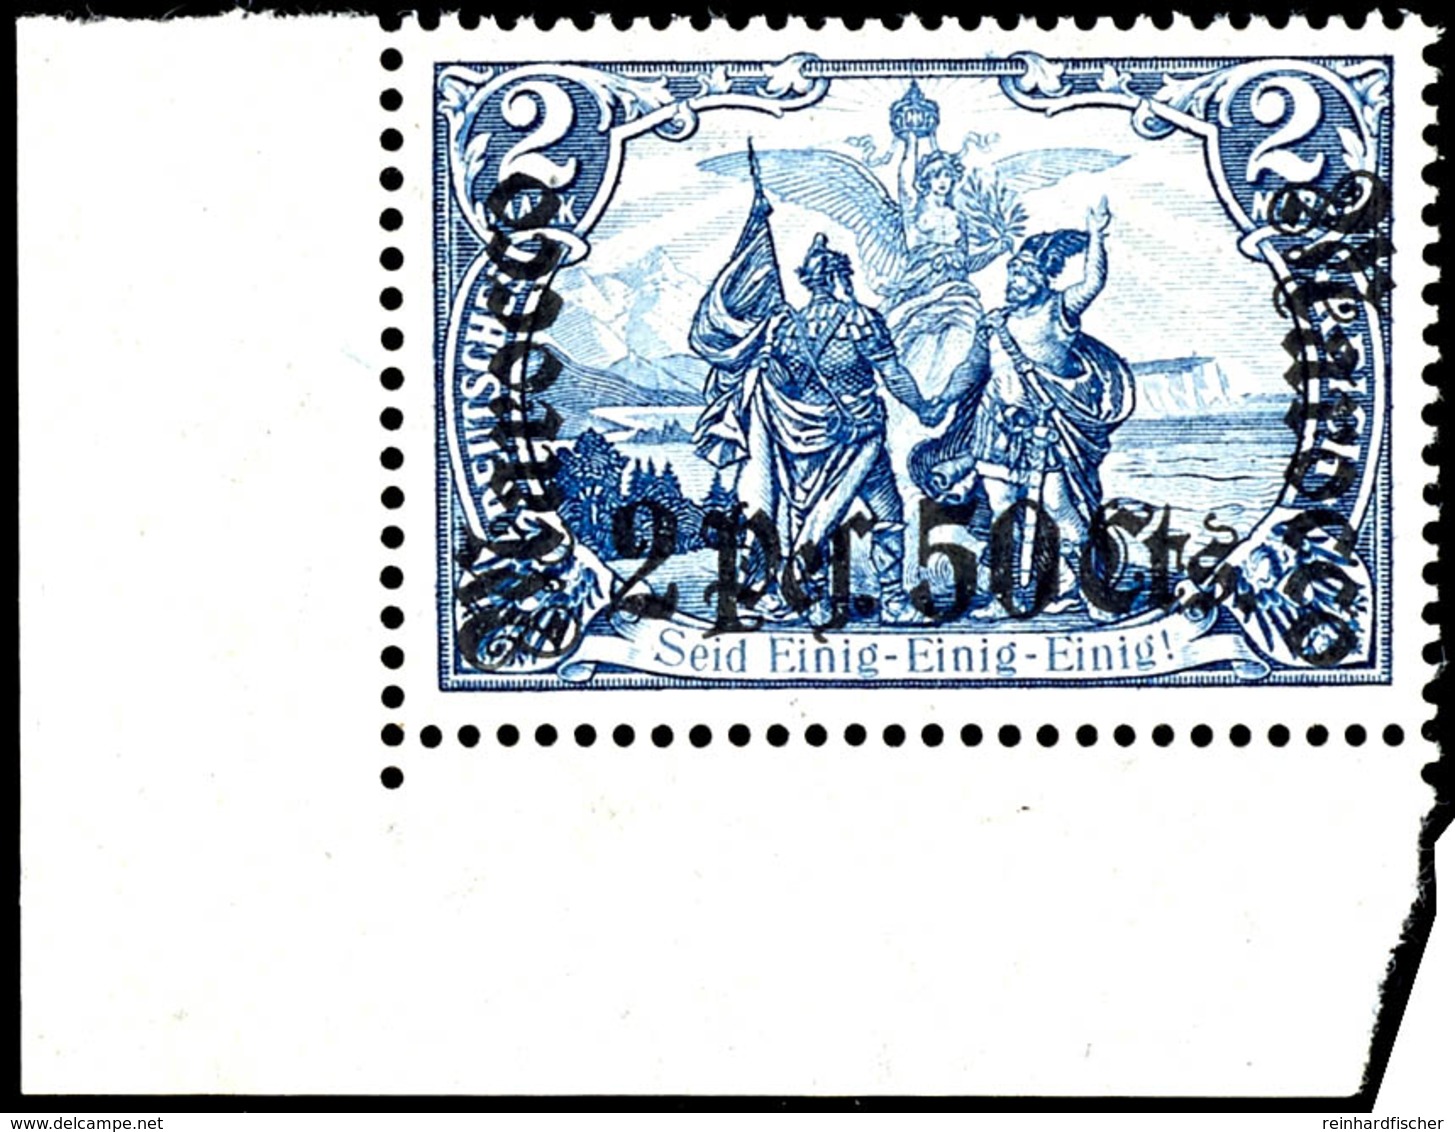 2 Mark Deutsches Reich Mit Wasserzeichen, Aufdruck "Marocco 2 Pes. 50 Cts.", Postfrisches Kabinettstück Vom Linken, Unte - Deutsche Post In Marokko